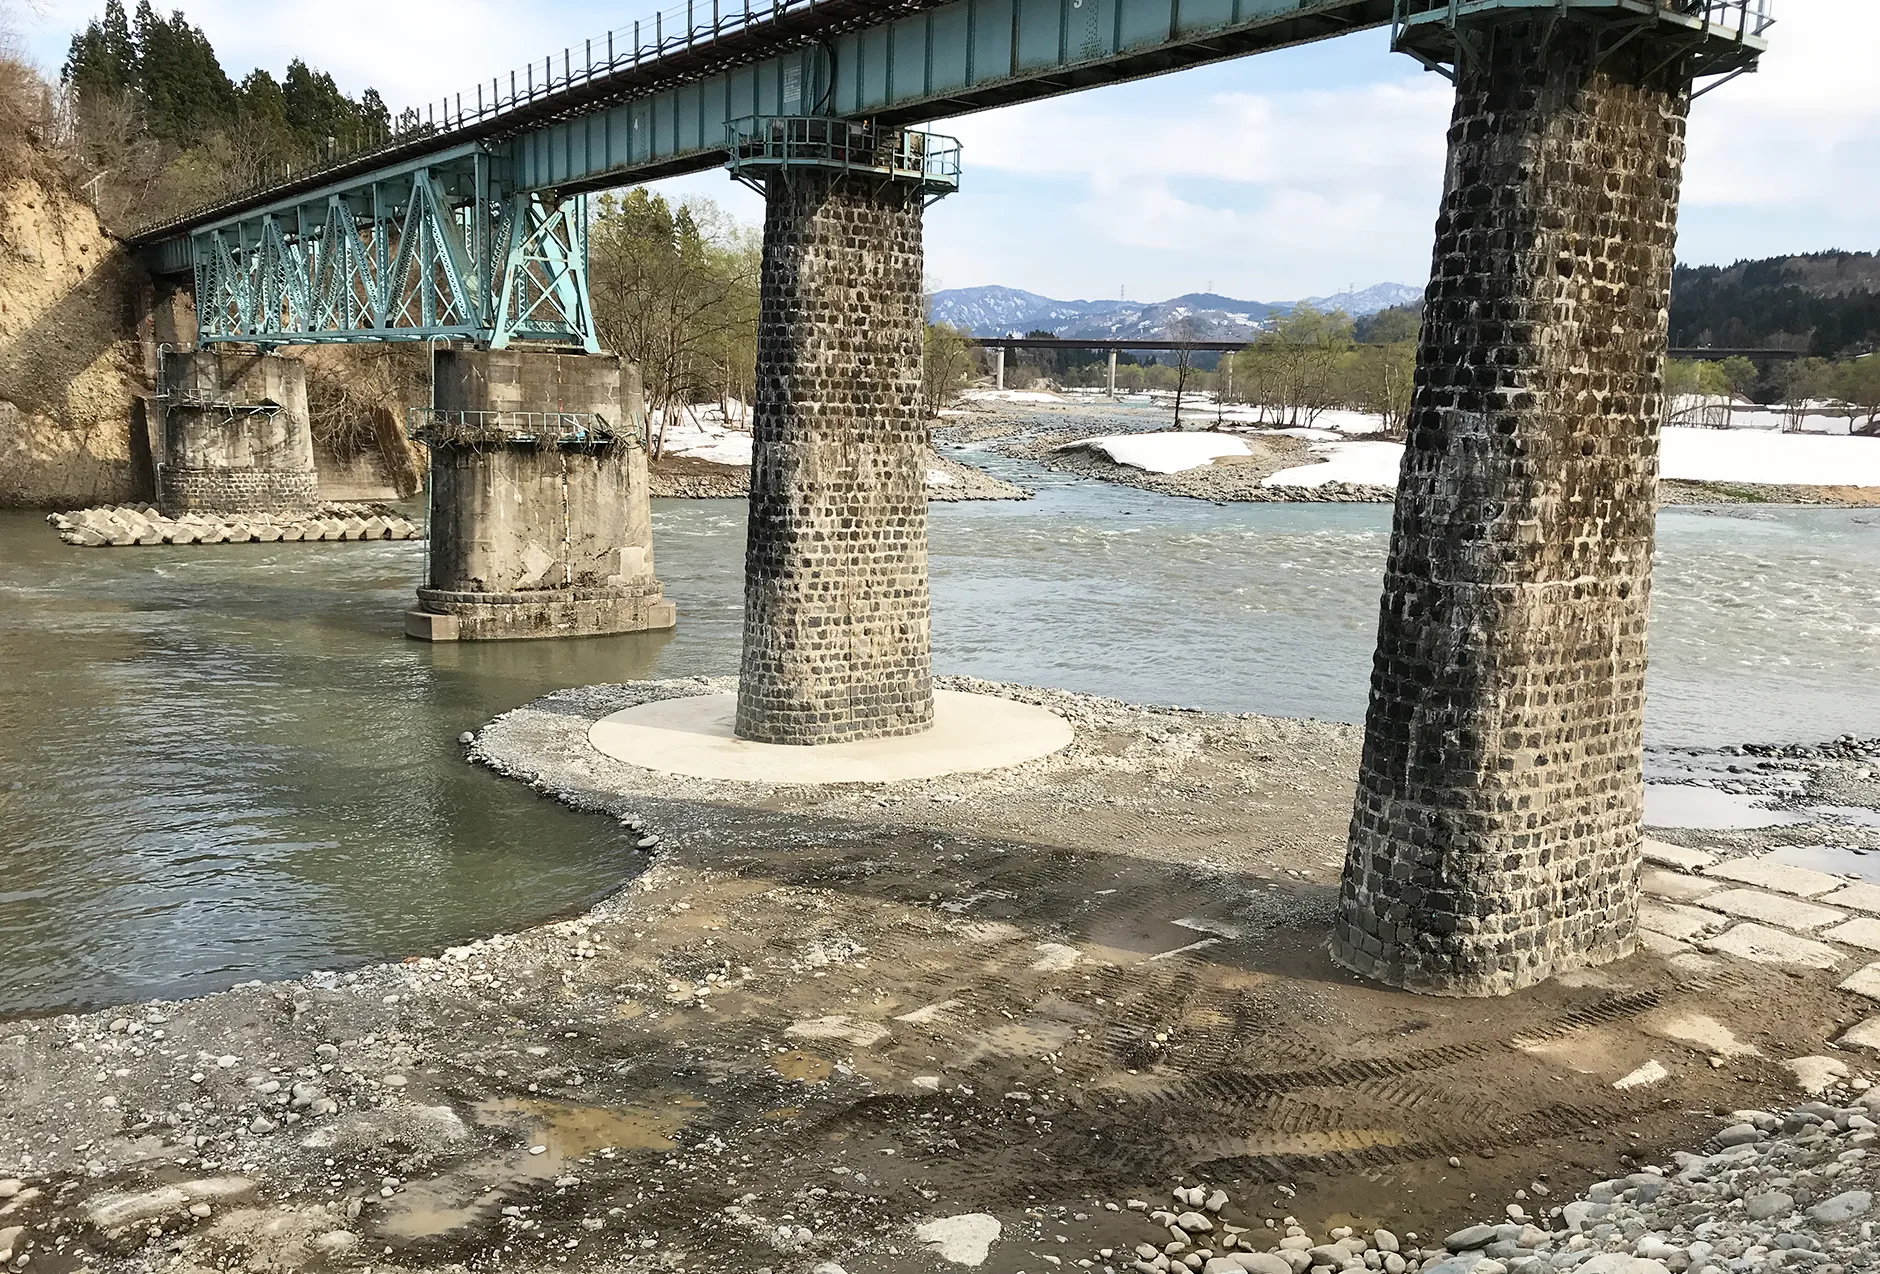 JR飯山線 越後鹿渡・越後田沢間信濃川橋りょう洗堀災害復旧工事のサムネイル画像です